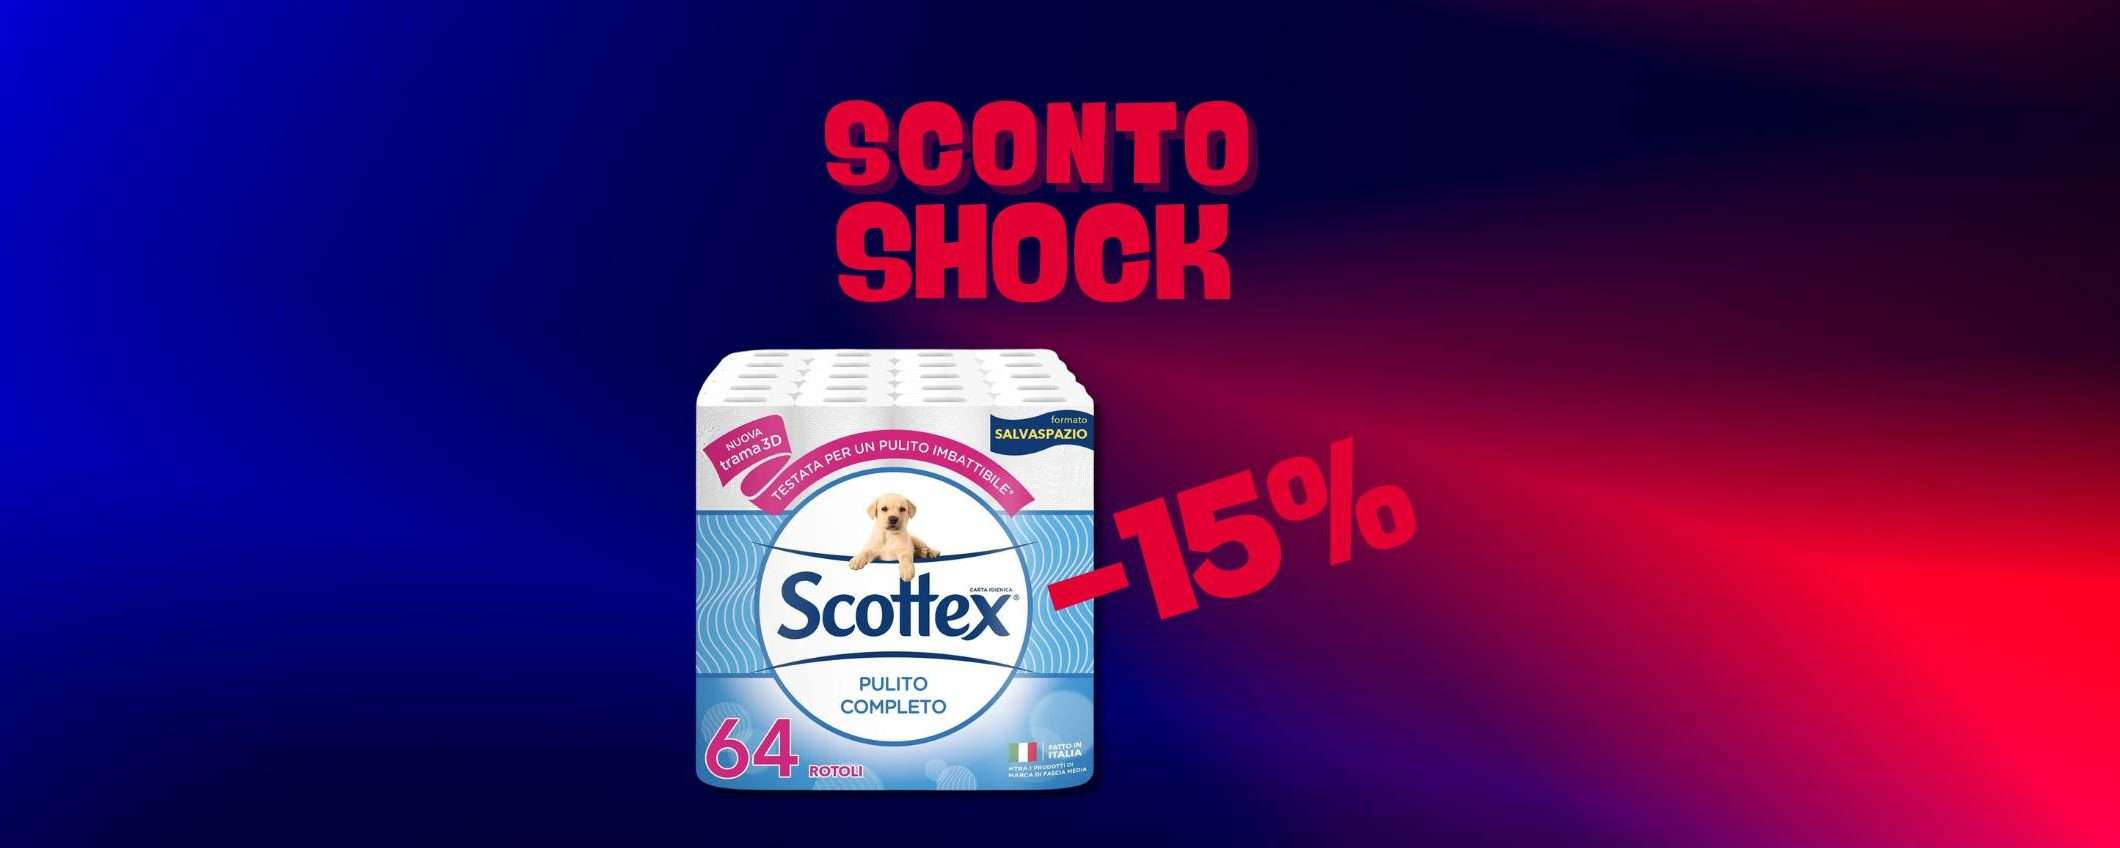 Super scorta di carta igienica Scottex (-15%)